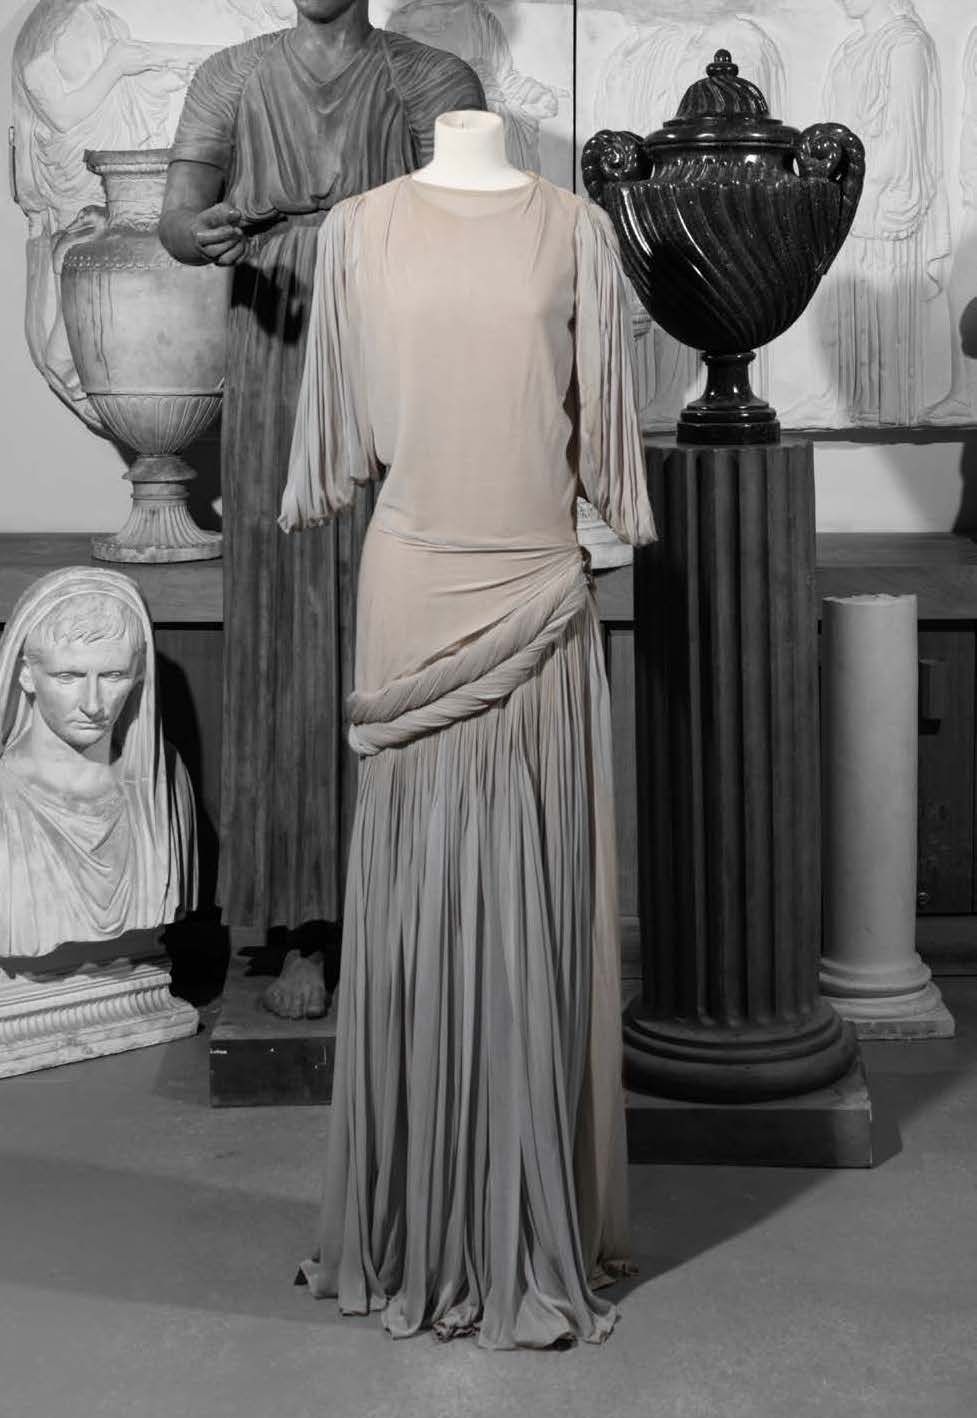 GRES 高级定制系列，20世纪40年代末
时装秀的原型 - 型号2387
长款晚礼服，平胸和垂袖，裙摆有卷褶，灰色针织衫。
没有标签，车间里的人